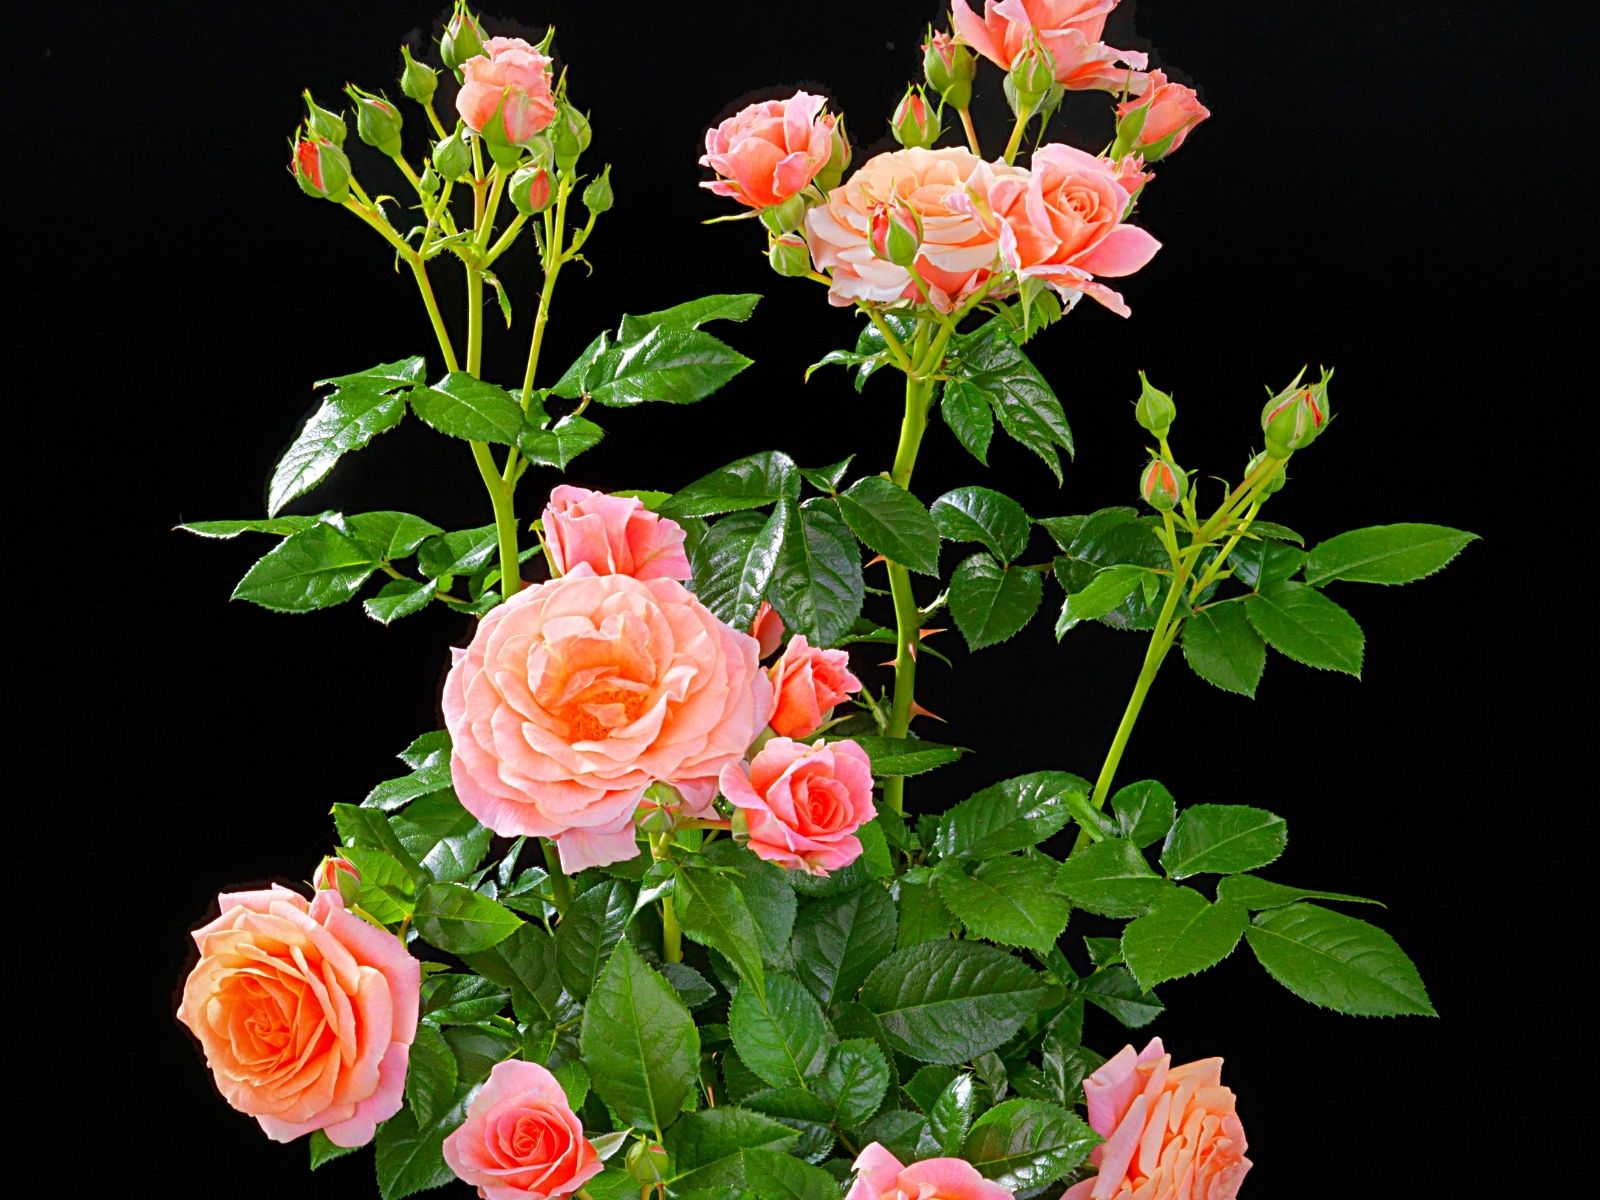 De Ruiter - Creating Flower Business - on Thursd - Terrazza Fragrance